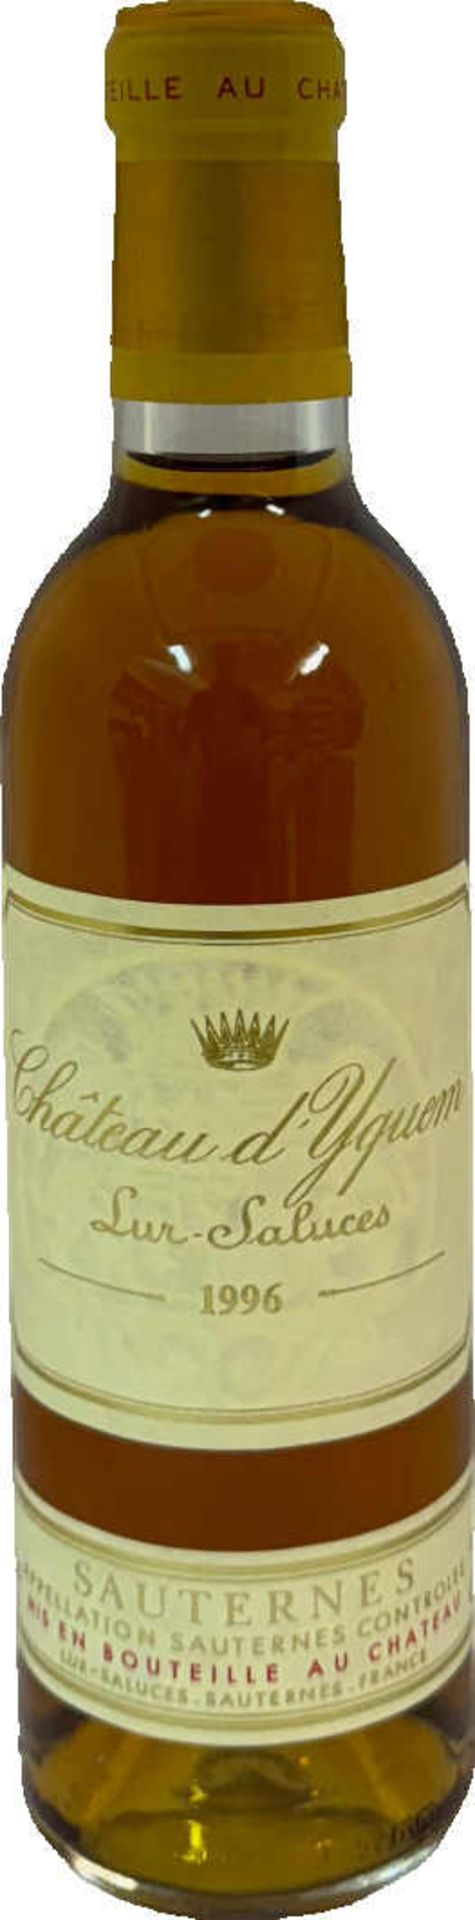 Château d'Yquem, Sauternes, 1er Cru Supérieur Classé 9 Flaschen 0.375l, 1996, OHK ohne Deckel (